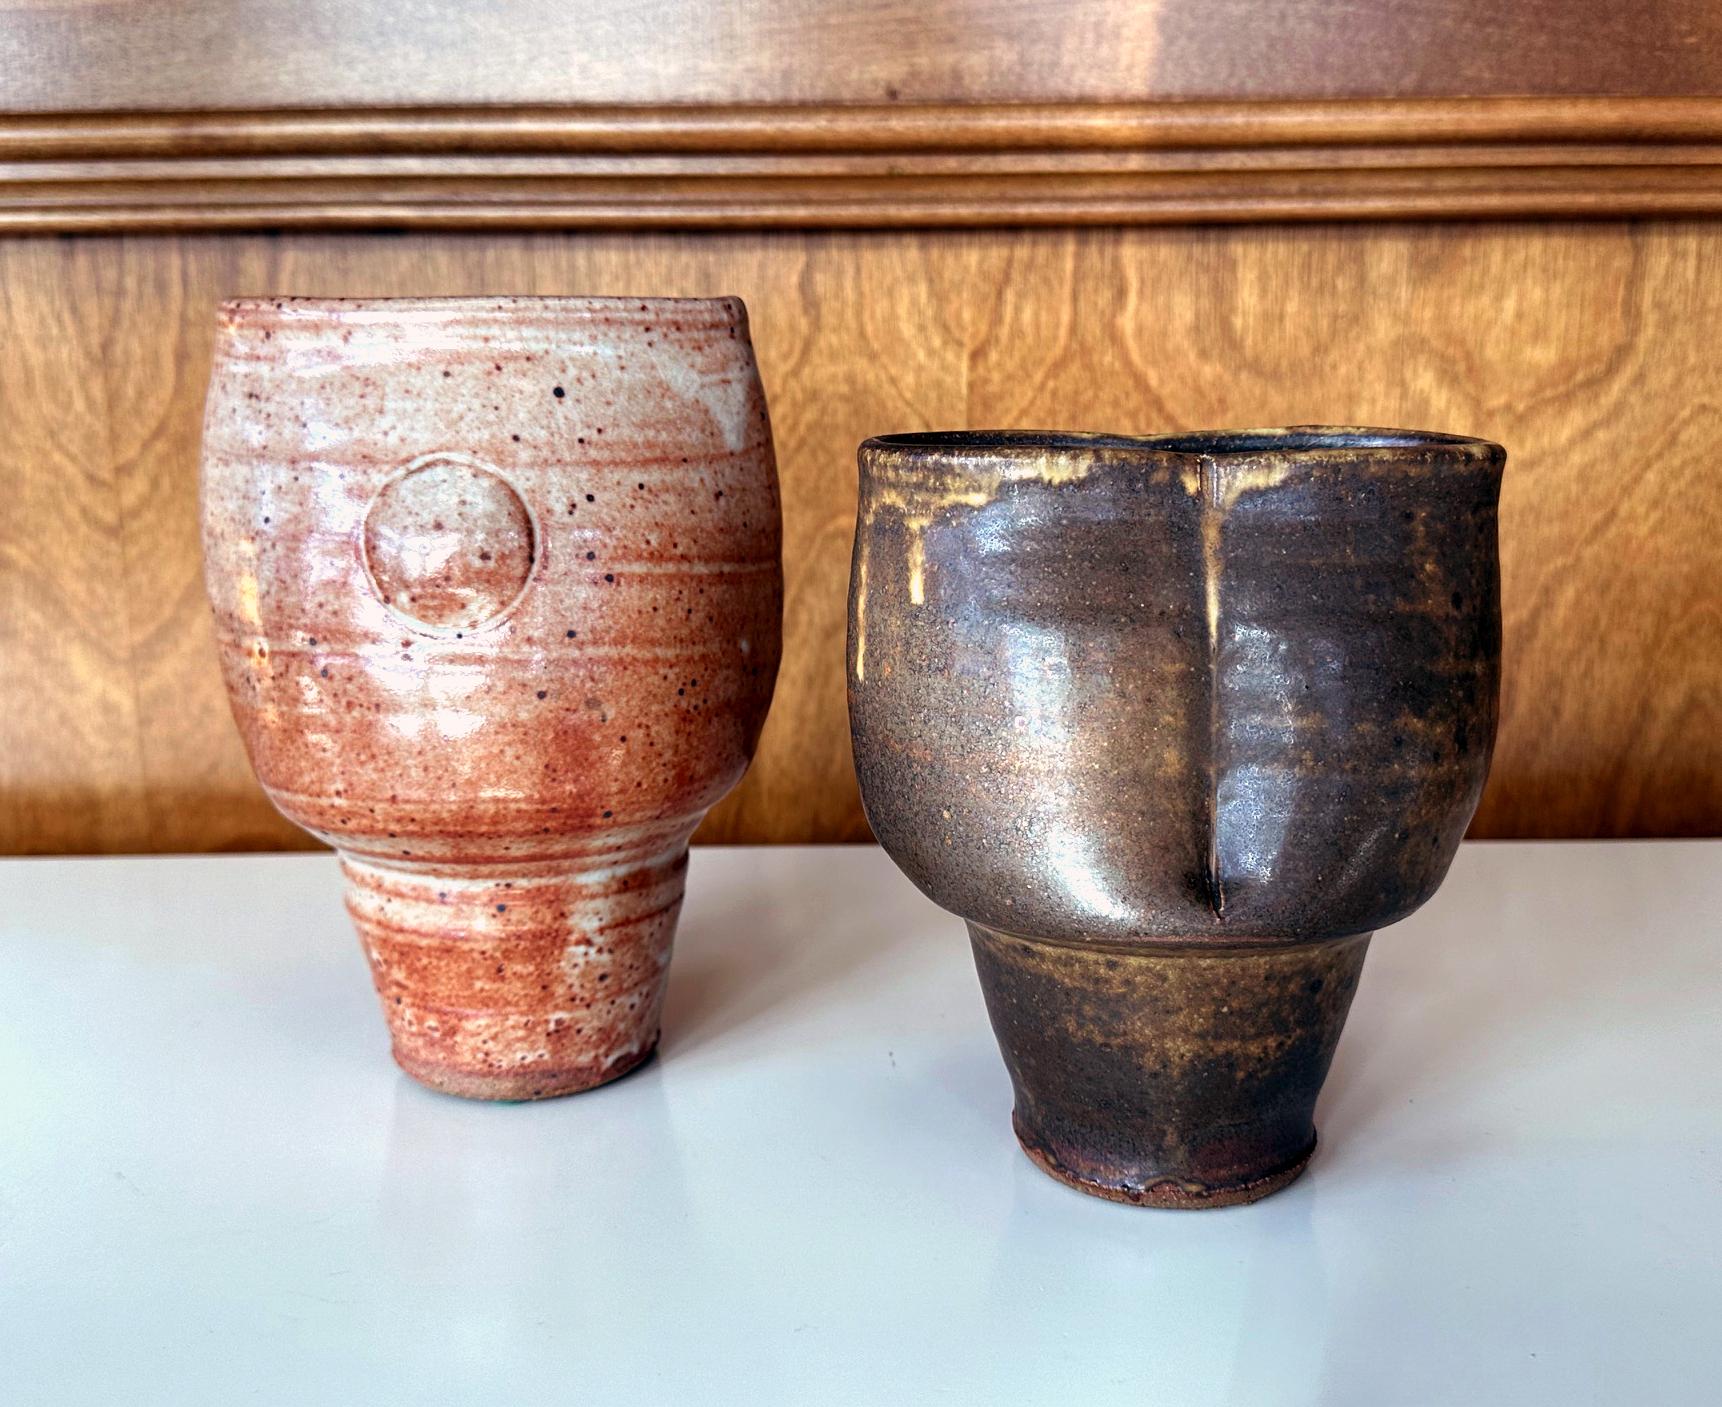 Un ensemble de deux vases à pied en grès de forme cylindrique par le potier de studio américain Warren MacKenzie (1924-2018). Les deux vases ont une forme et une silhouette complémentaires et s'exposent joliment ensemble. La surface du vase,